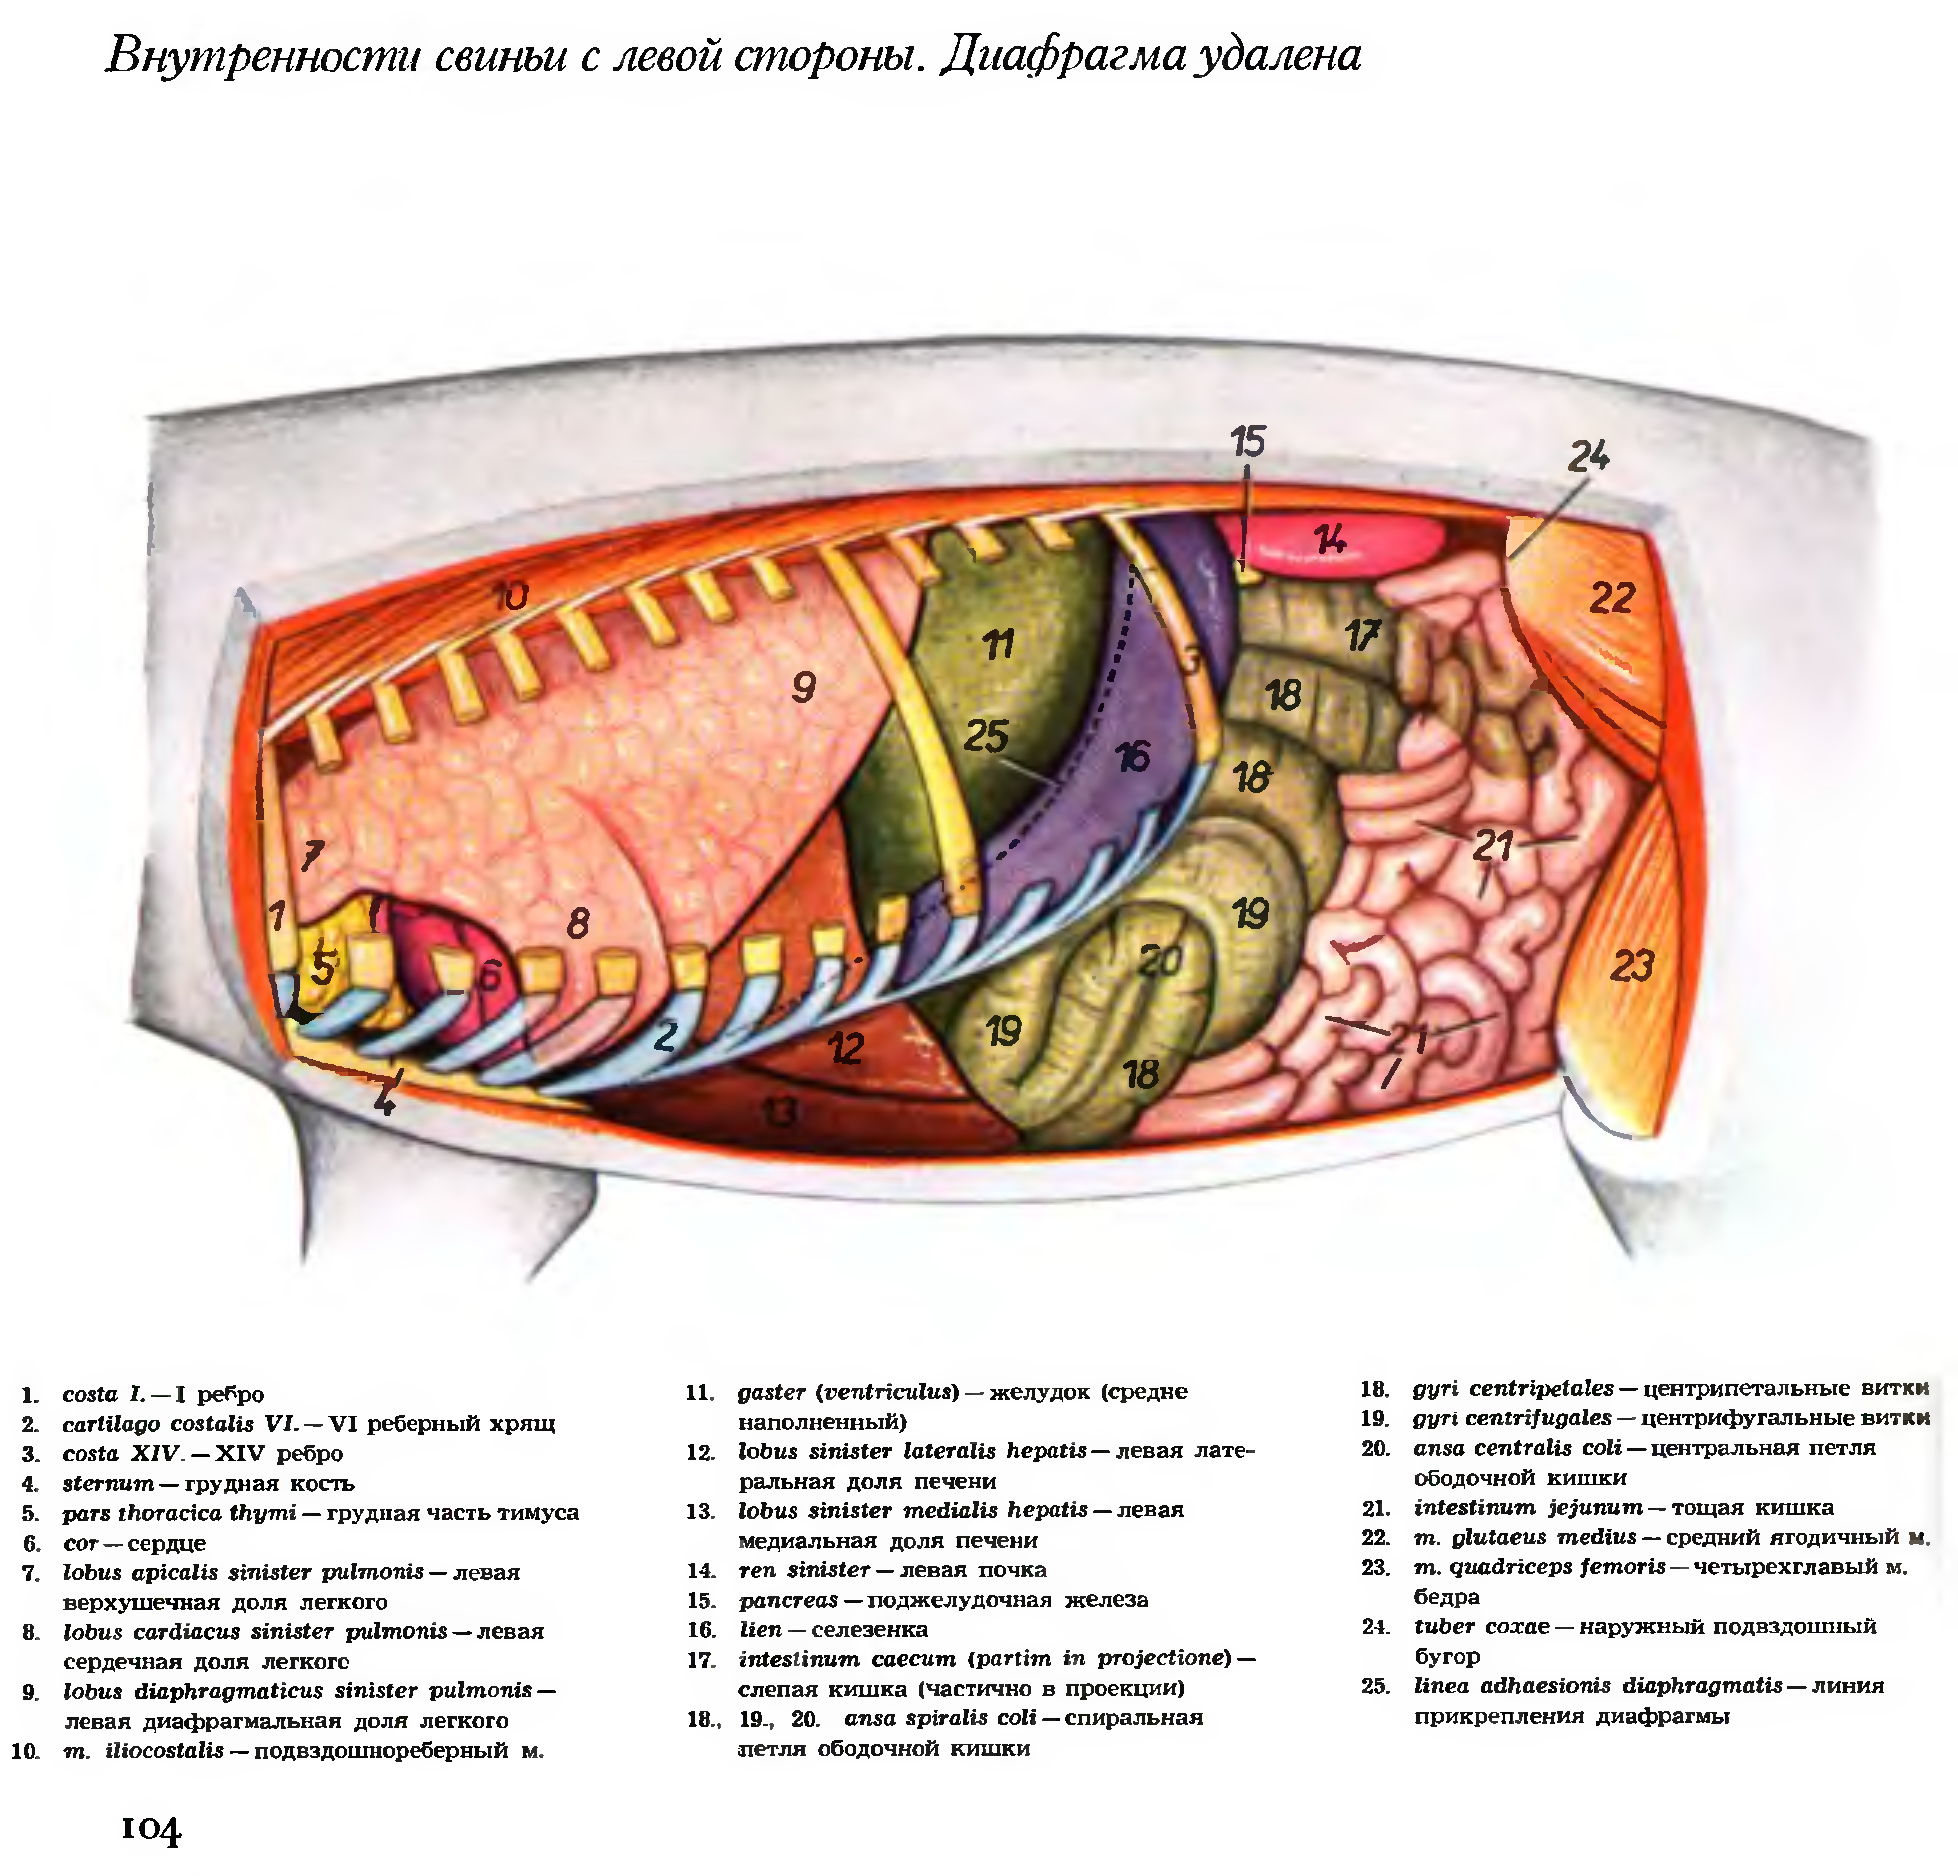 Топография органов свиньи